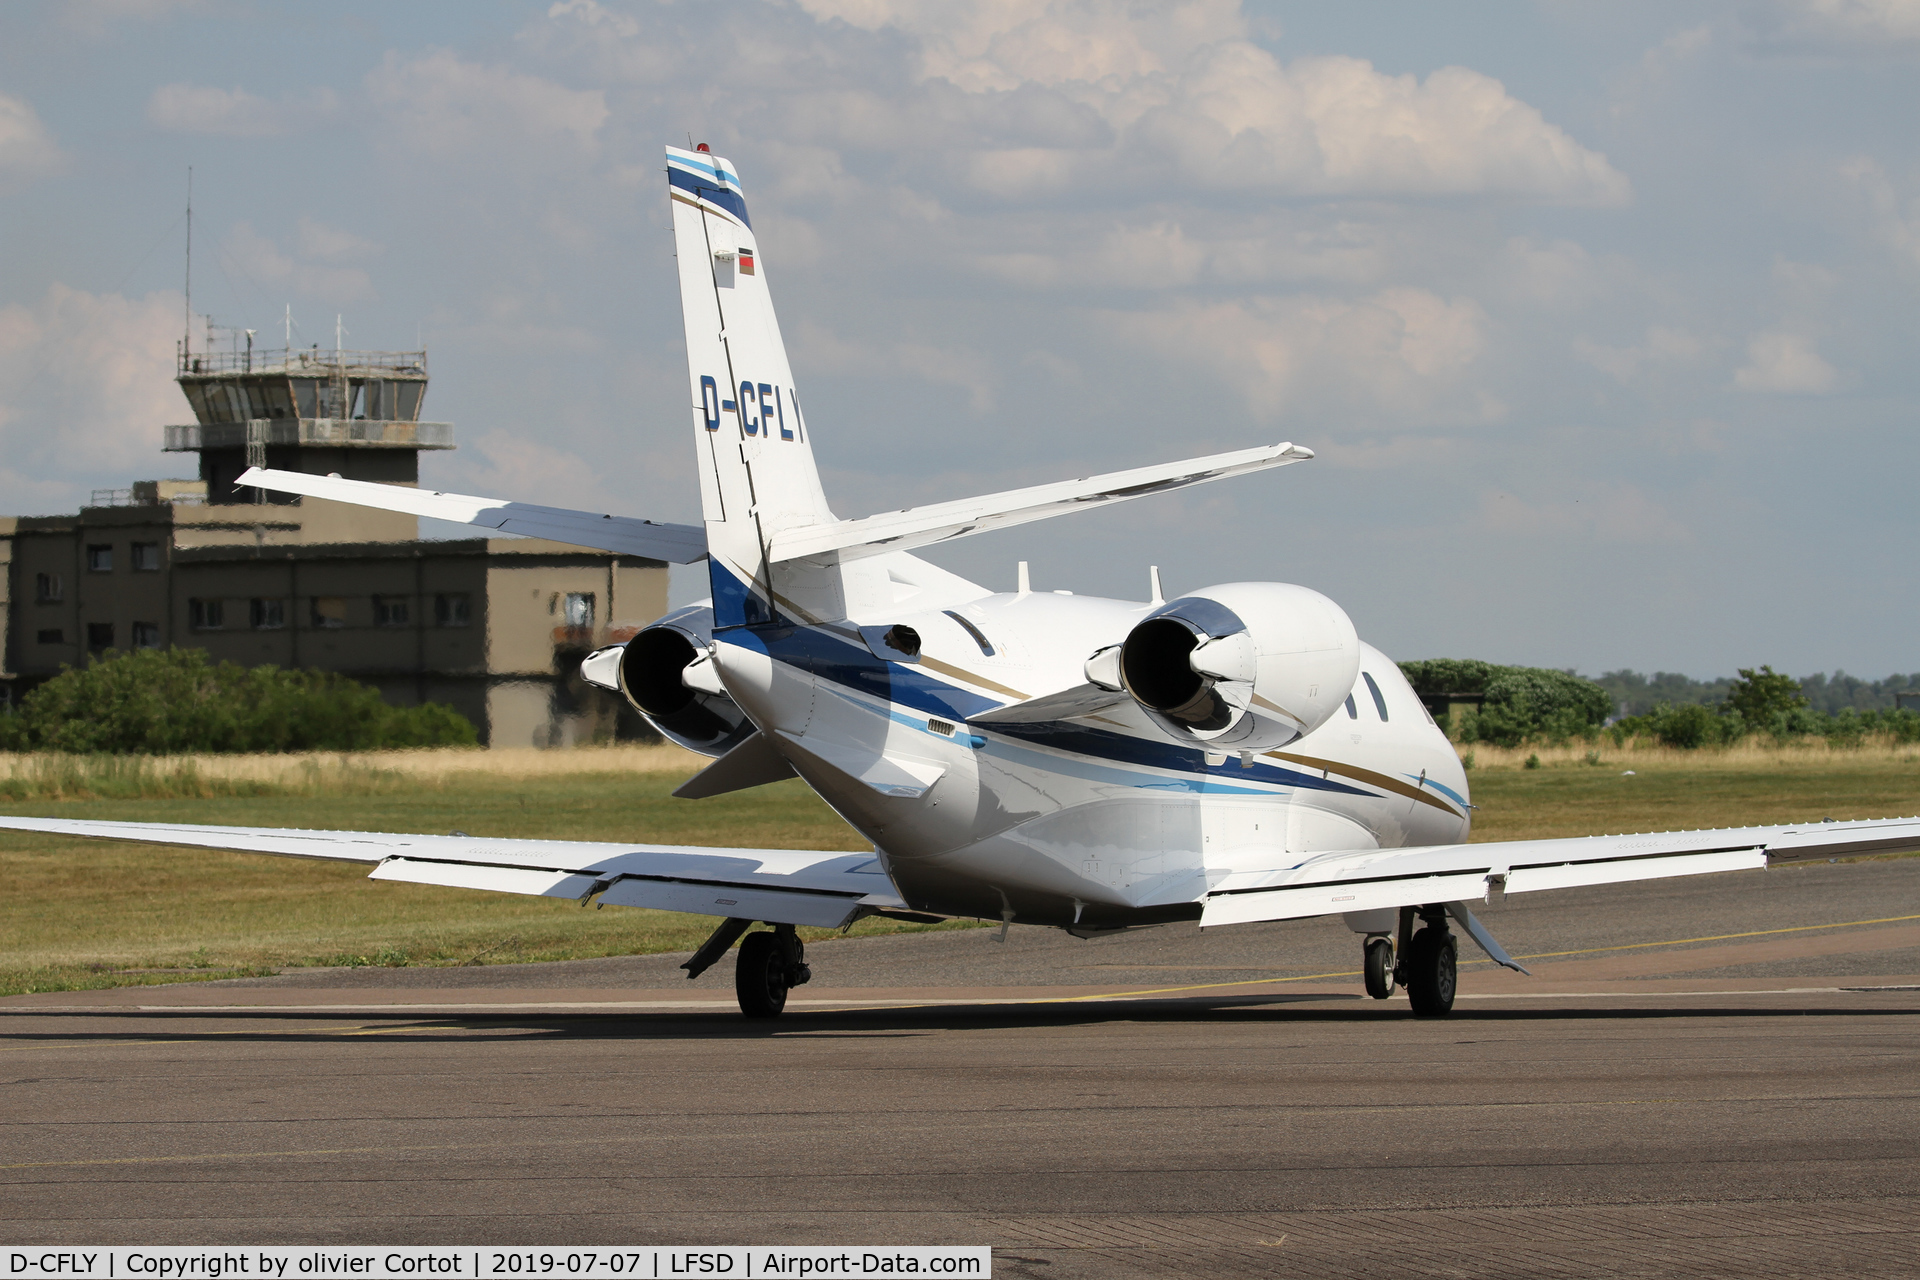 D-CFLY, 2009 Cessna 560 Citation XLS+ C/N 560-6014, 2019 airshow